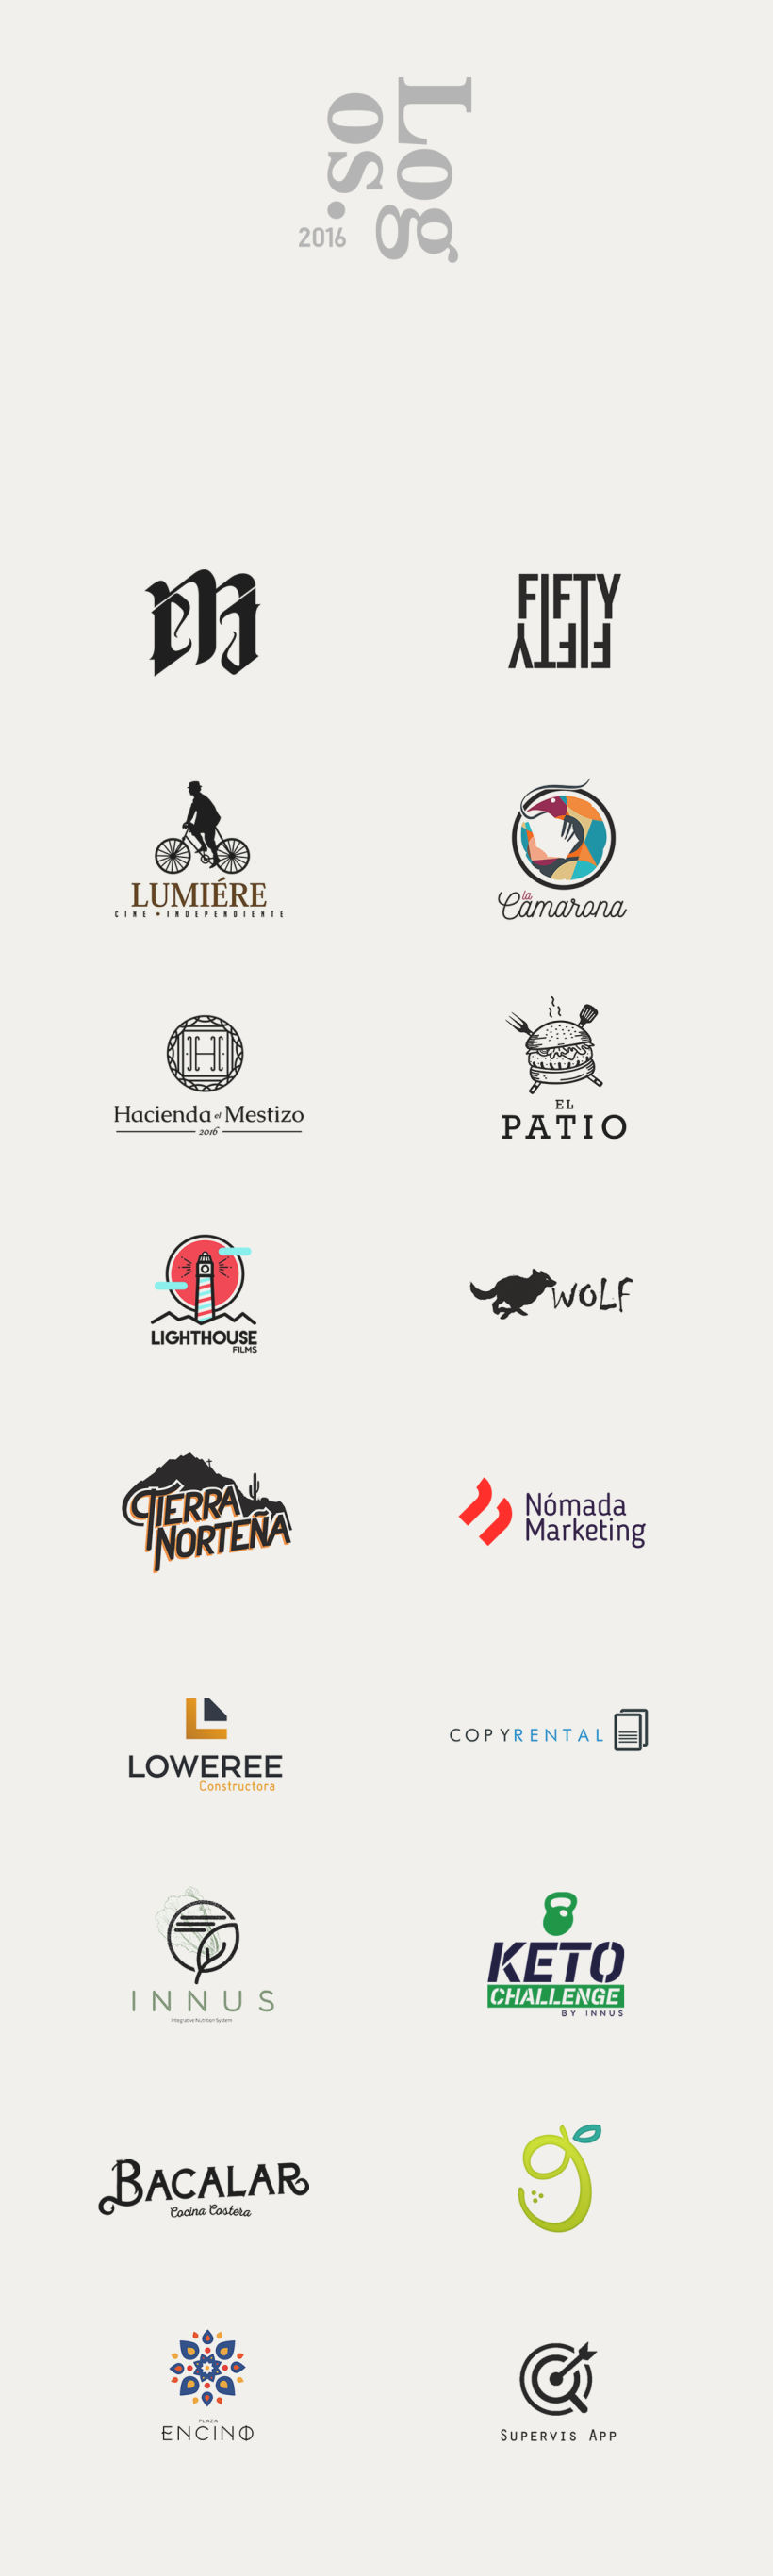 Logos 2016 -1